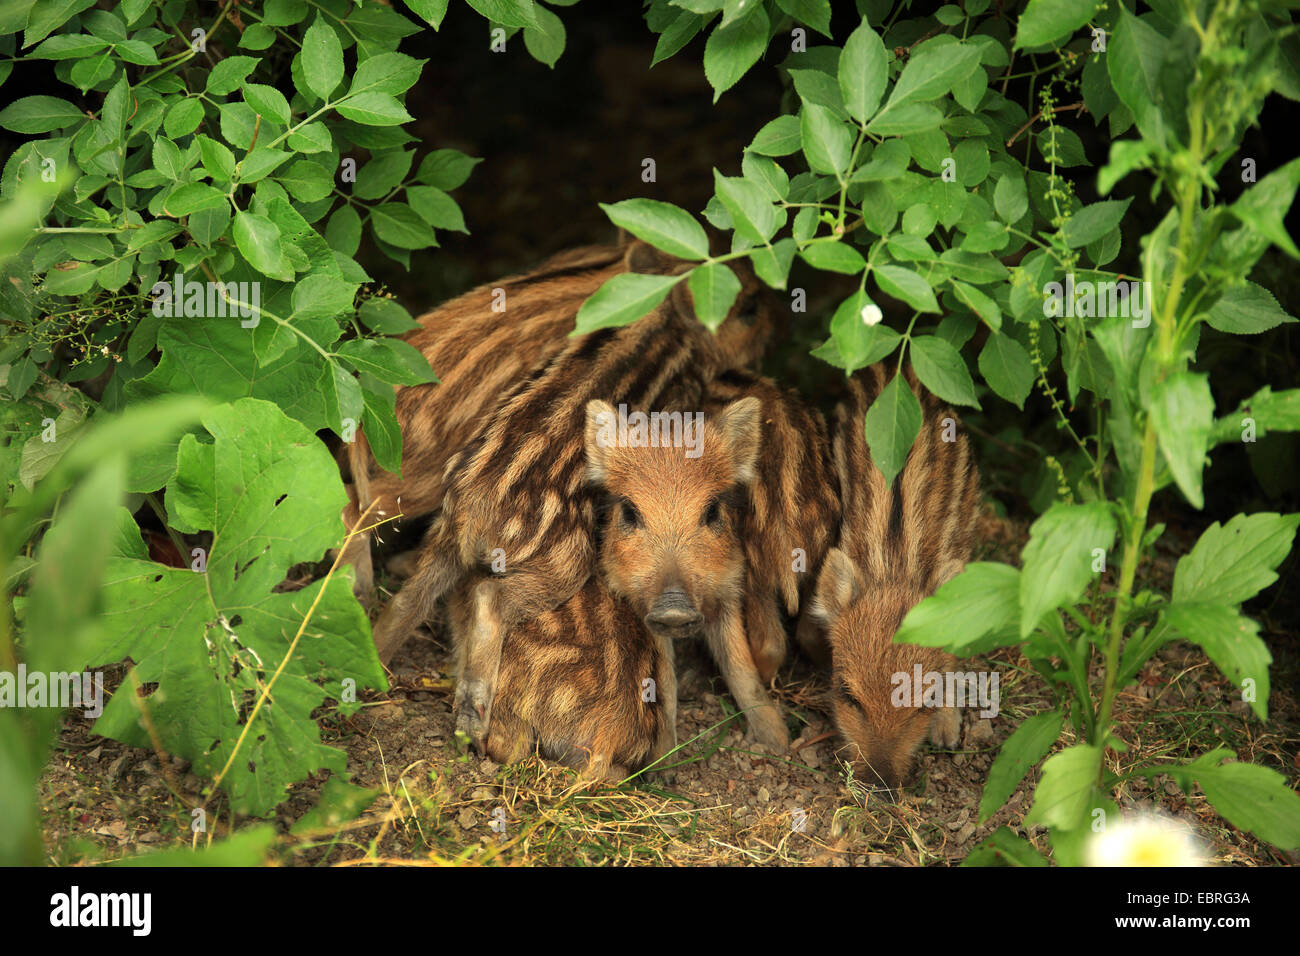 wild boar, pig, wild boar (Sus scrofa), shoats in early summer, Germany, Baden-Wuerttemberg Stock Photo